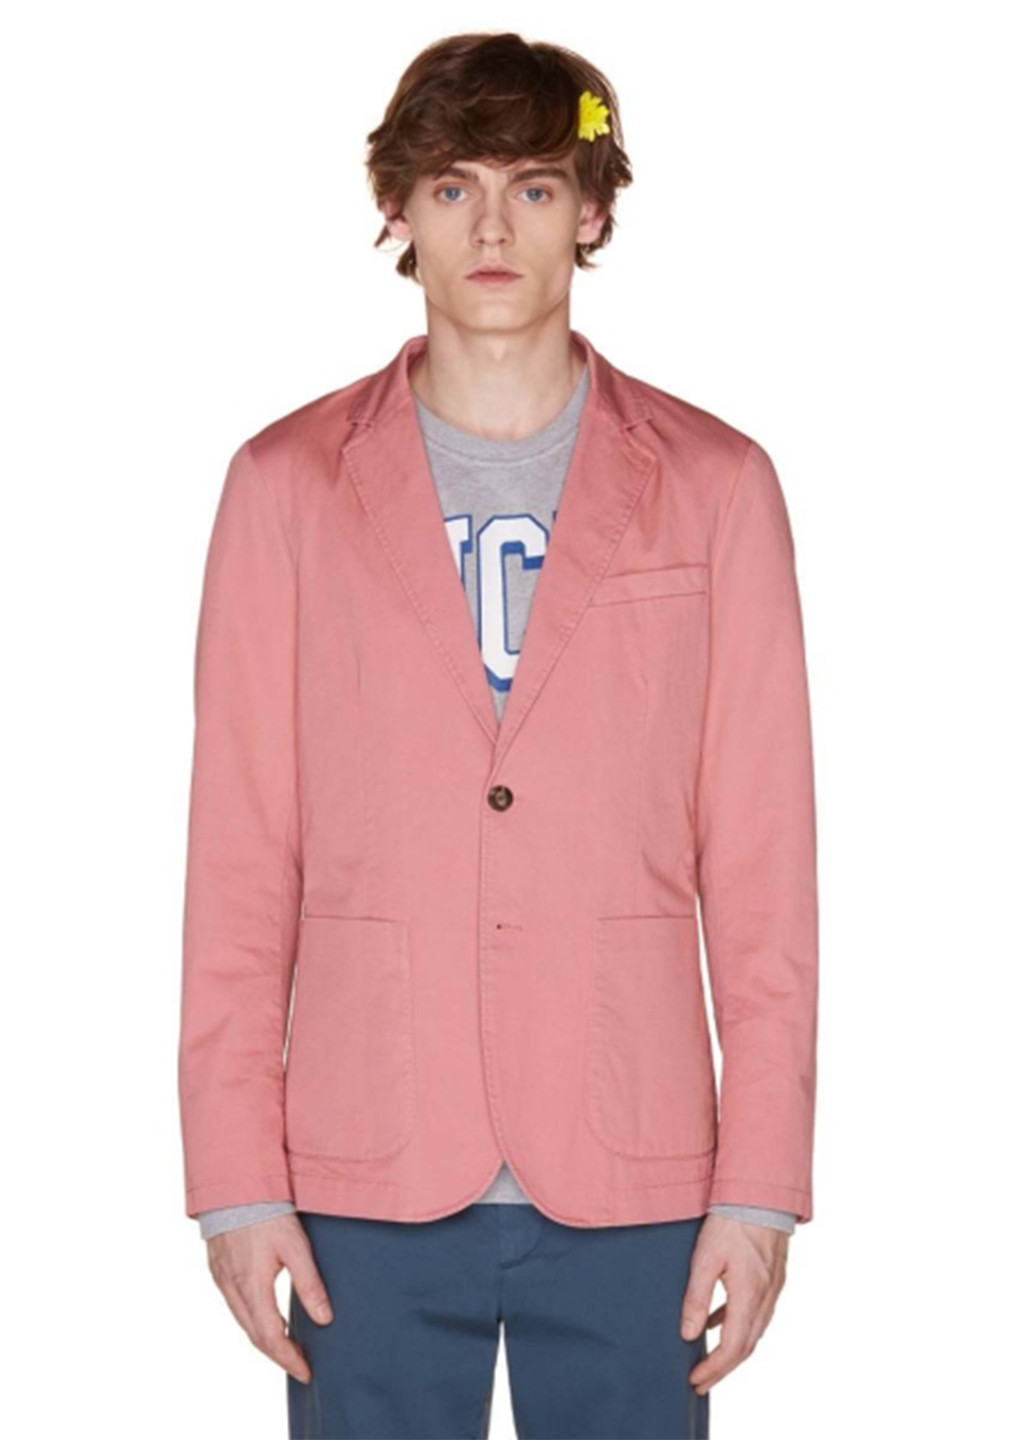 Пиджак United Colors of Benetton однотонный розовый кэжуал лен